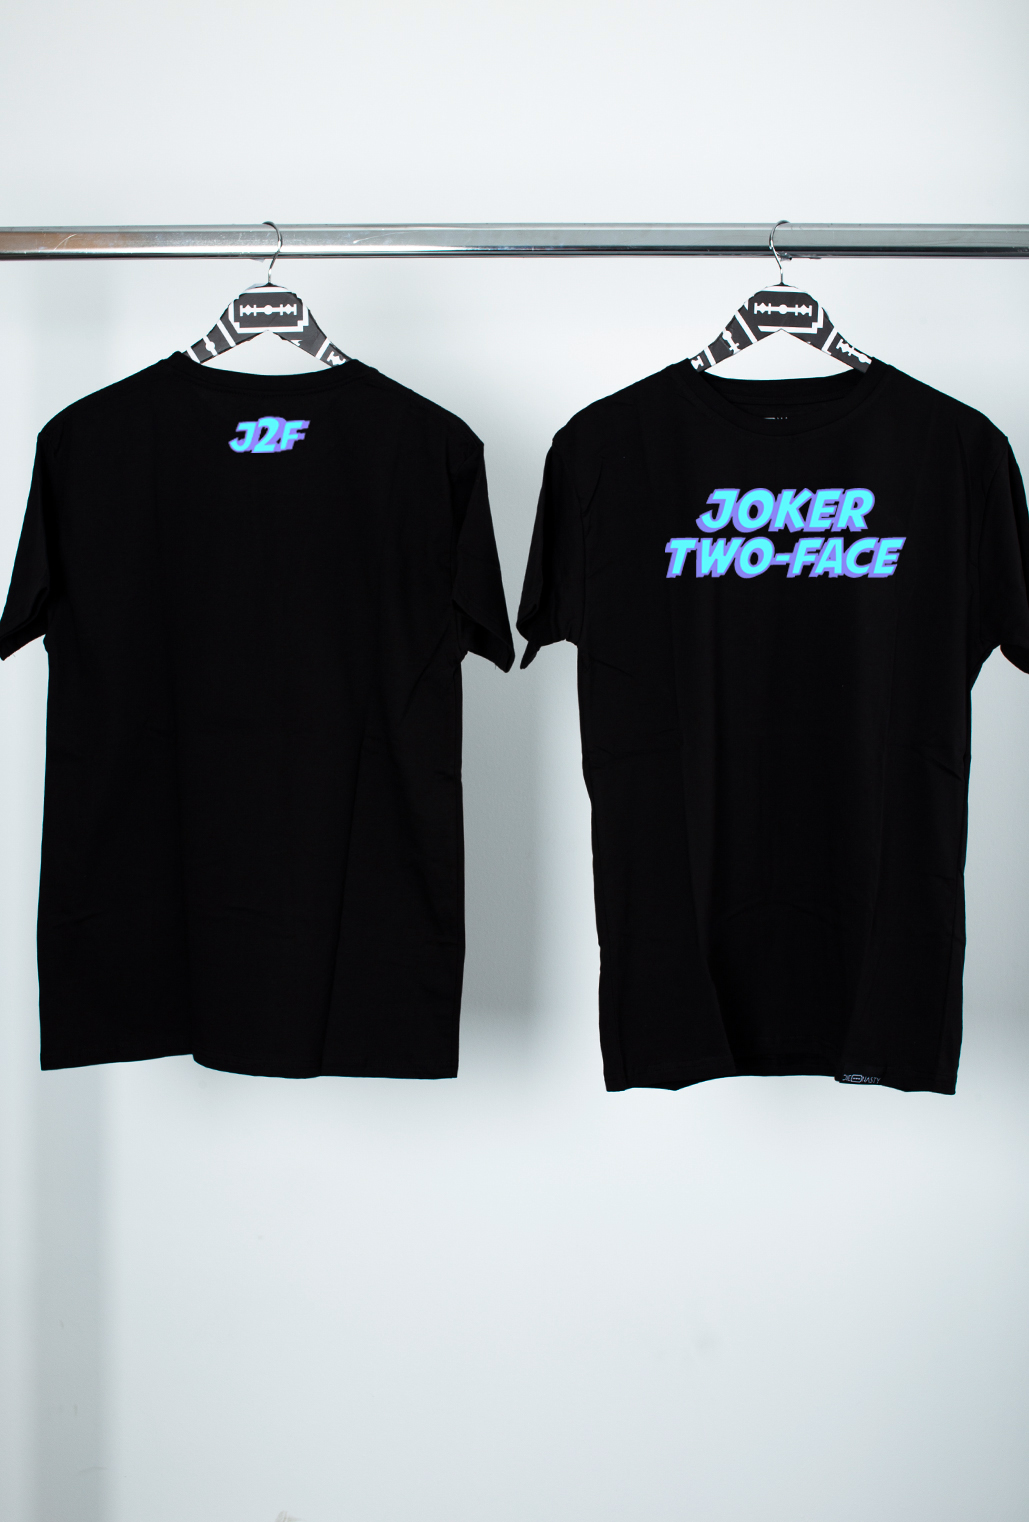 joker two face t shirt